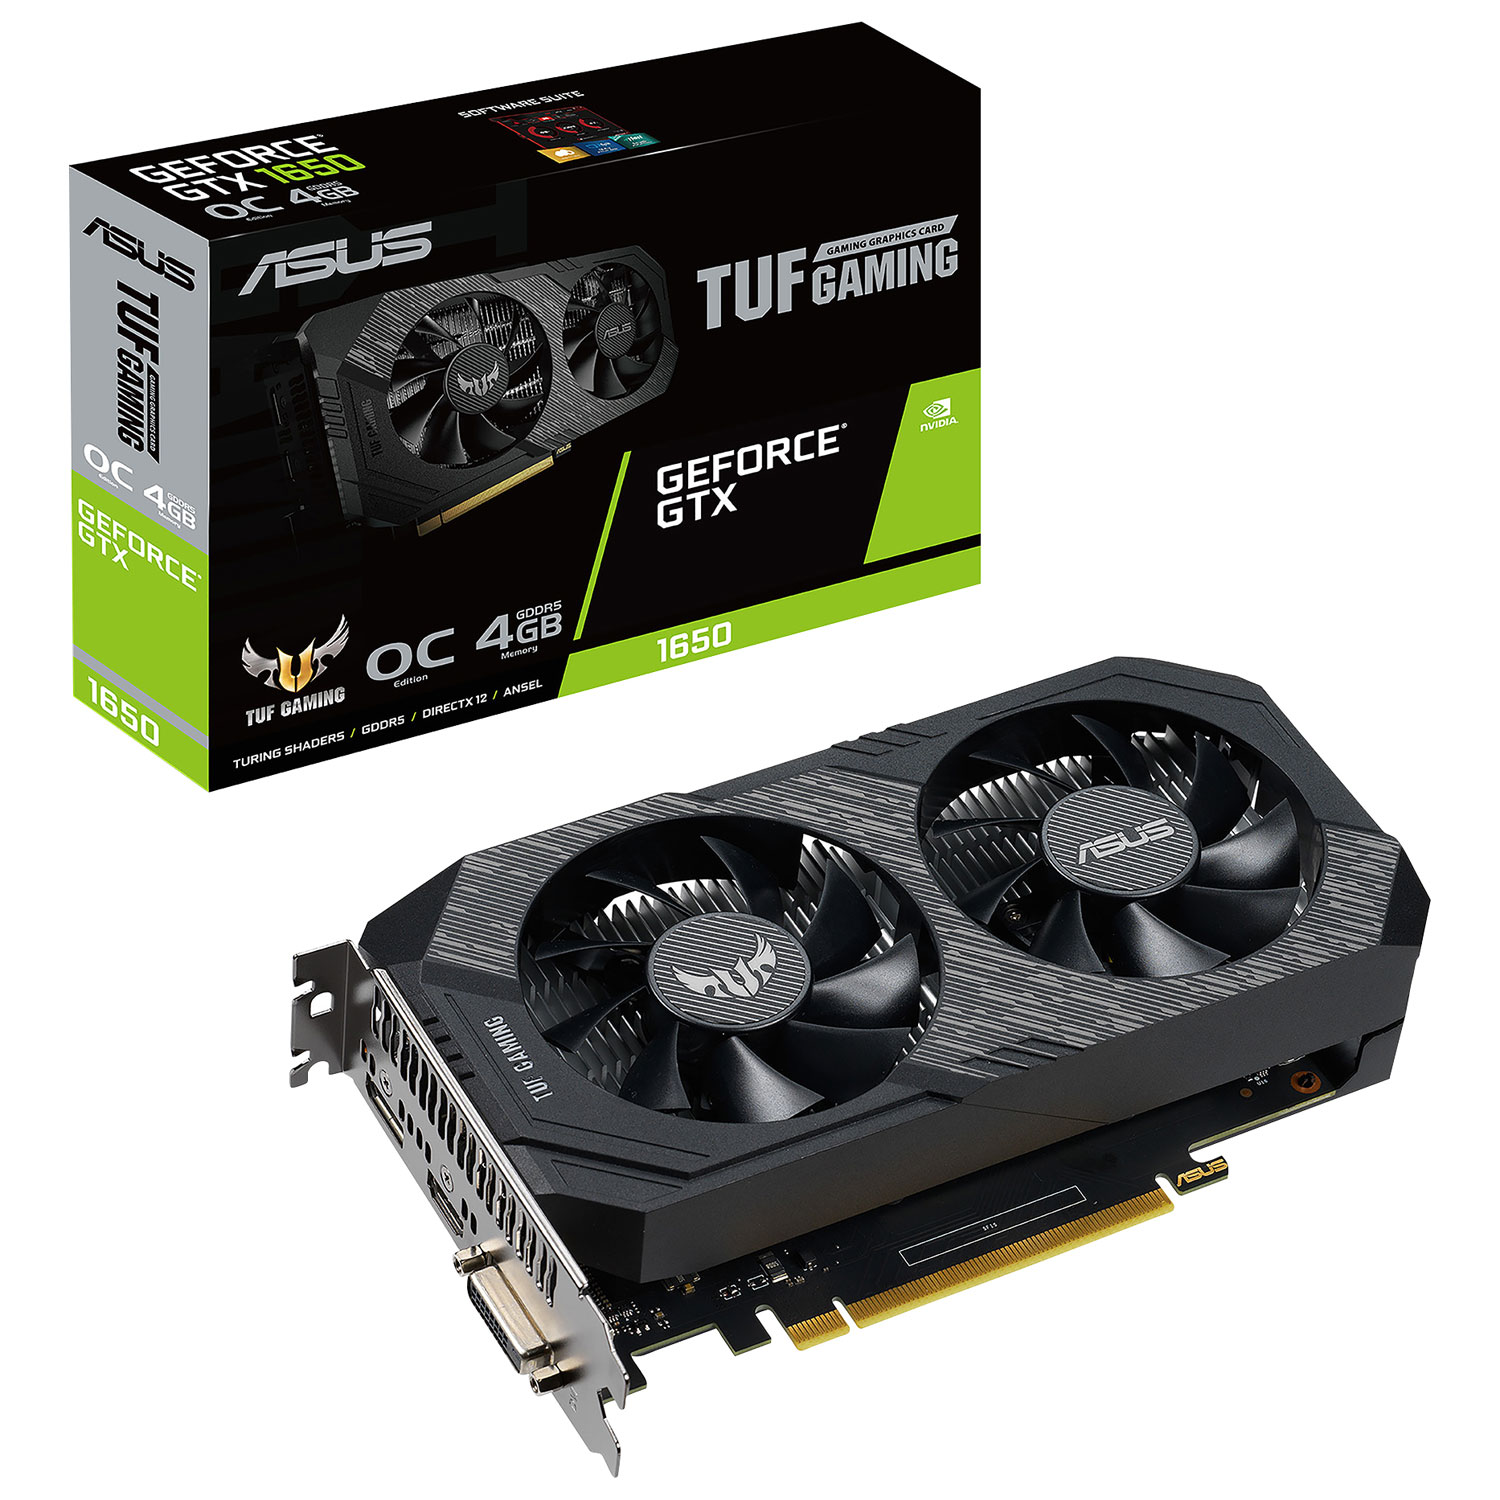 ASUS TUF Gaming GeForce GTX 1650 OC 4GB DDR6 Video Card